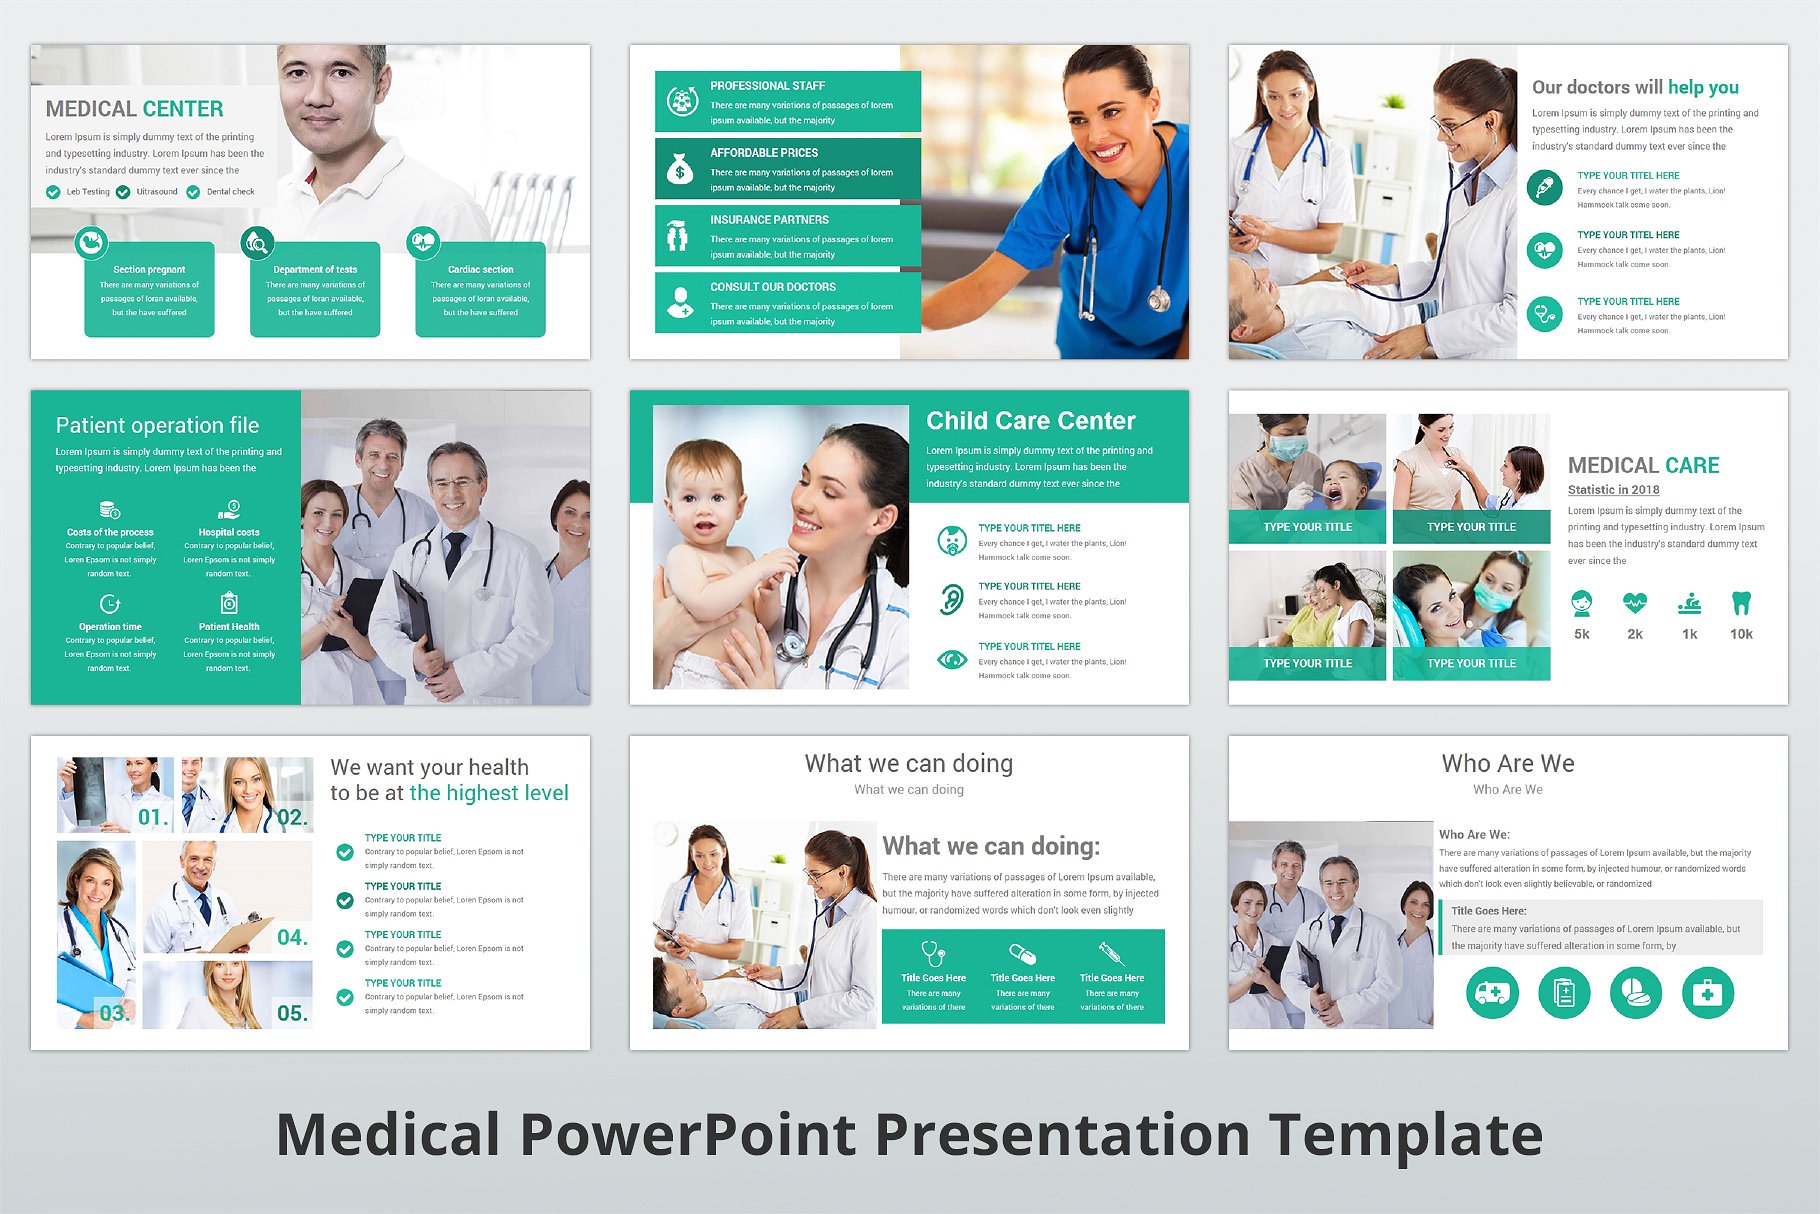 高品质医疗行业演示的PPT模板下载 Medical PowerPoint Template [pptx]插图(9)